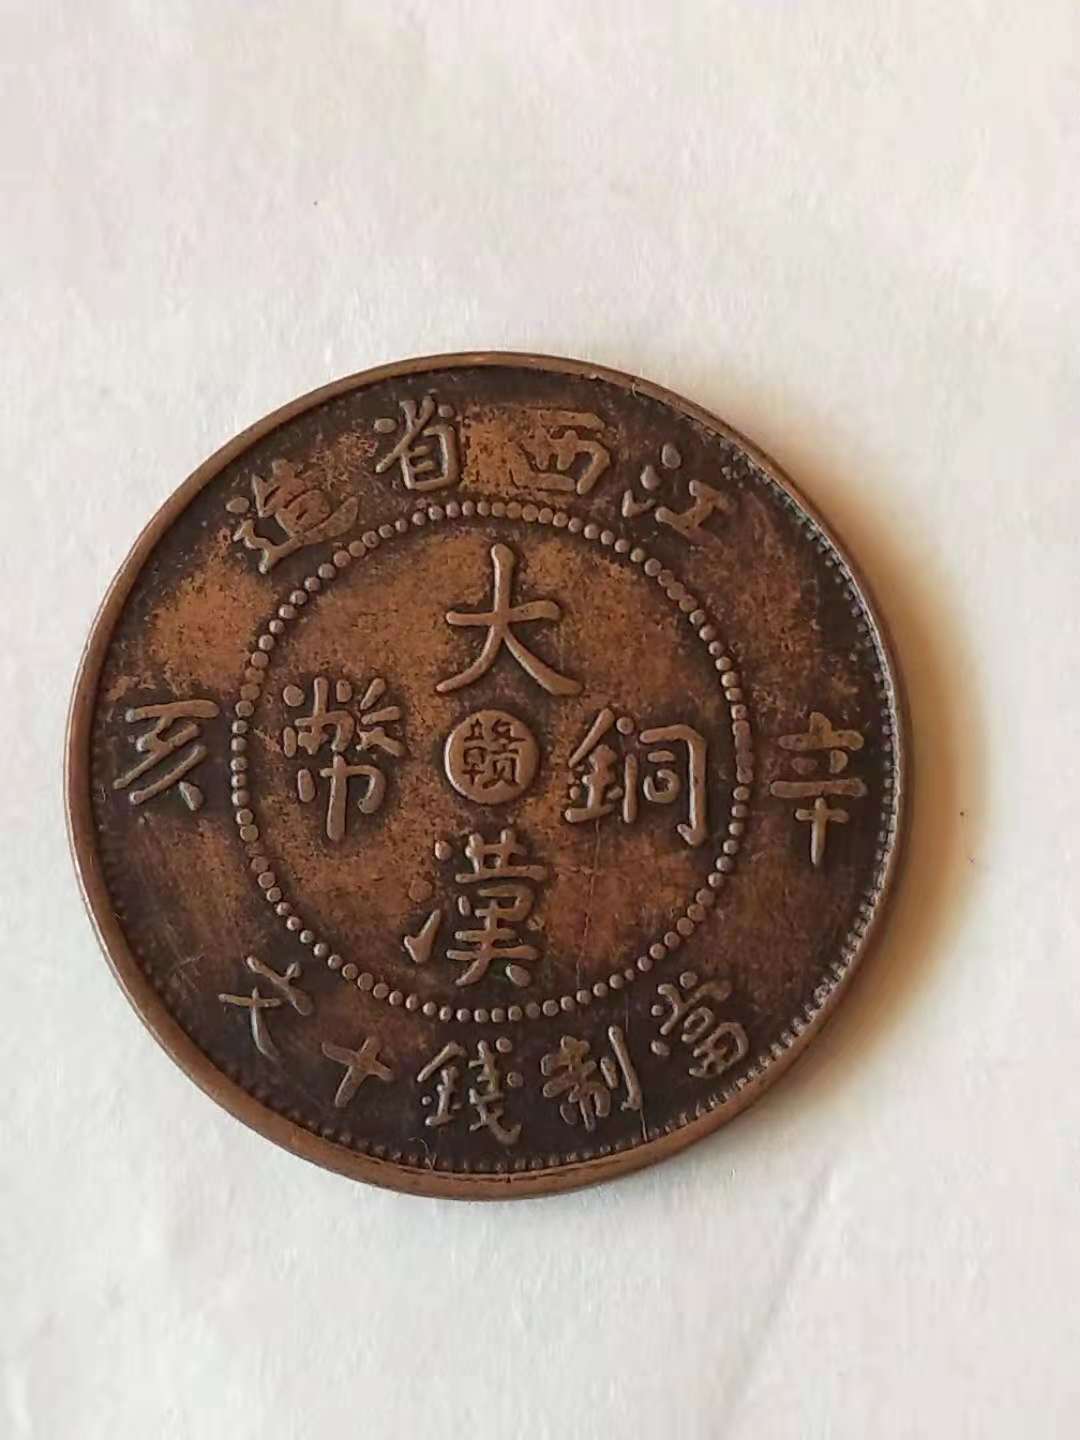 江西省造大汉铜币图片